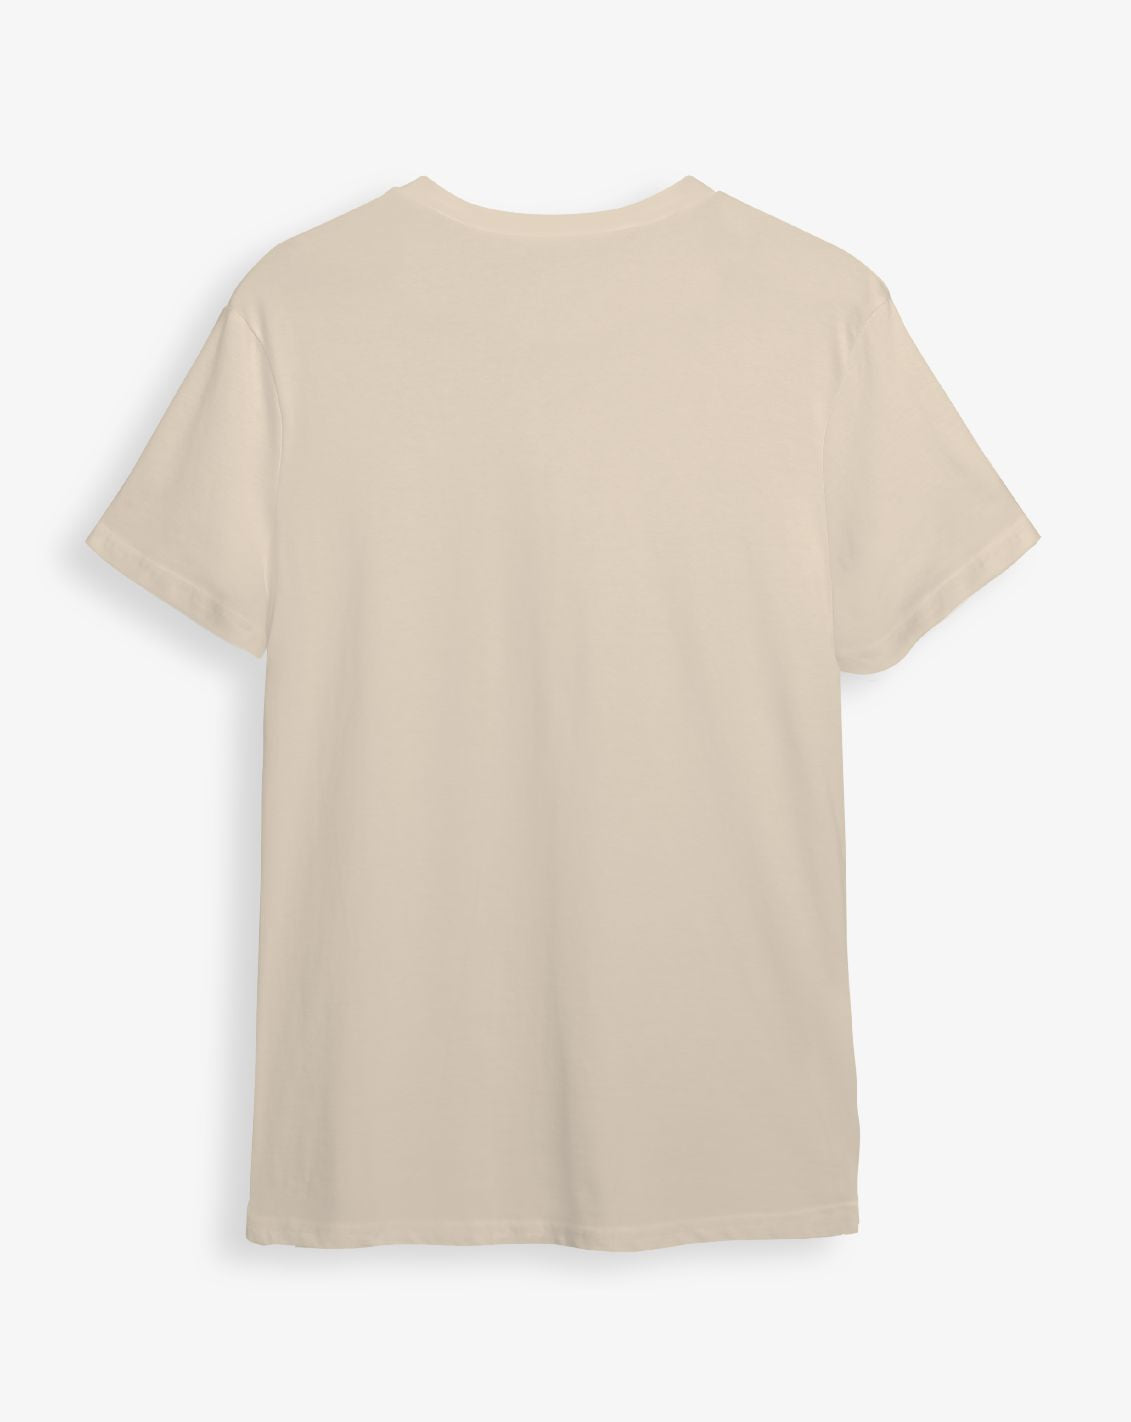 Camiseta capuccino unisex SKELETON HAND